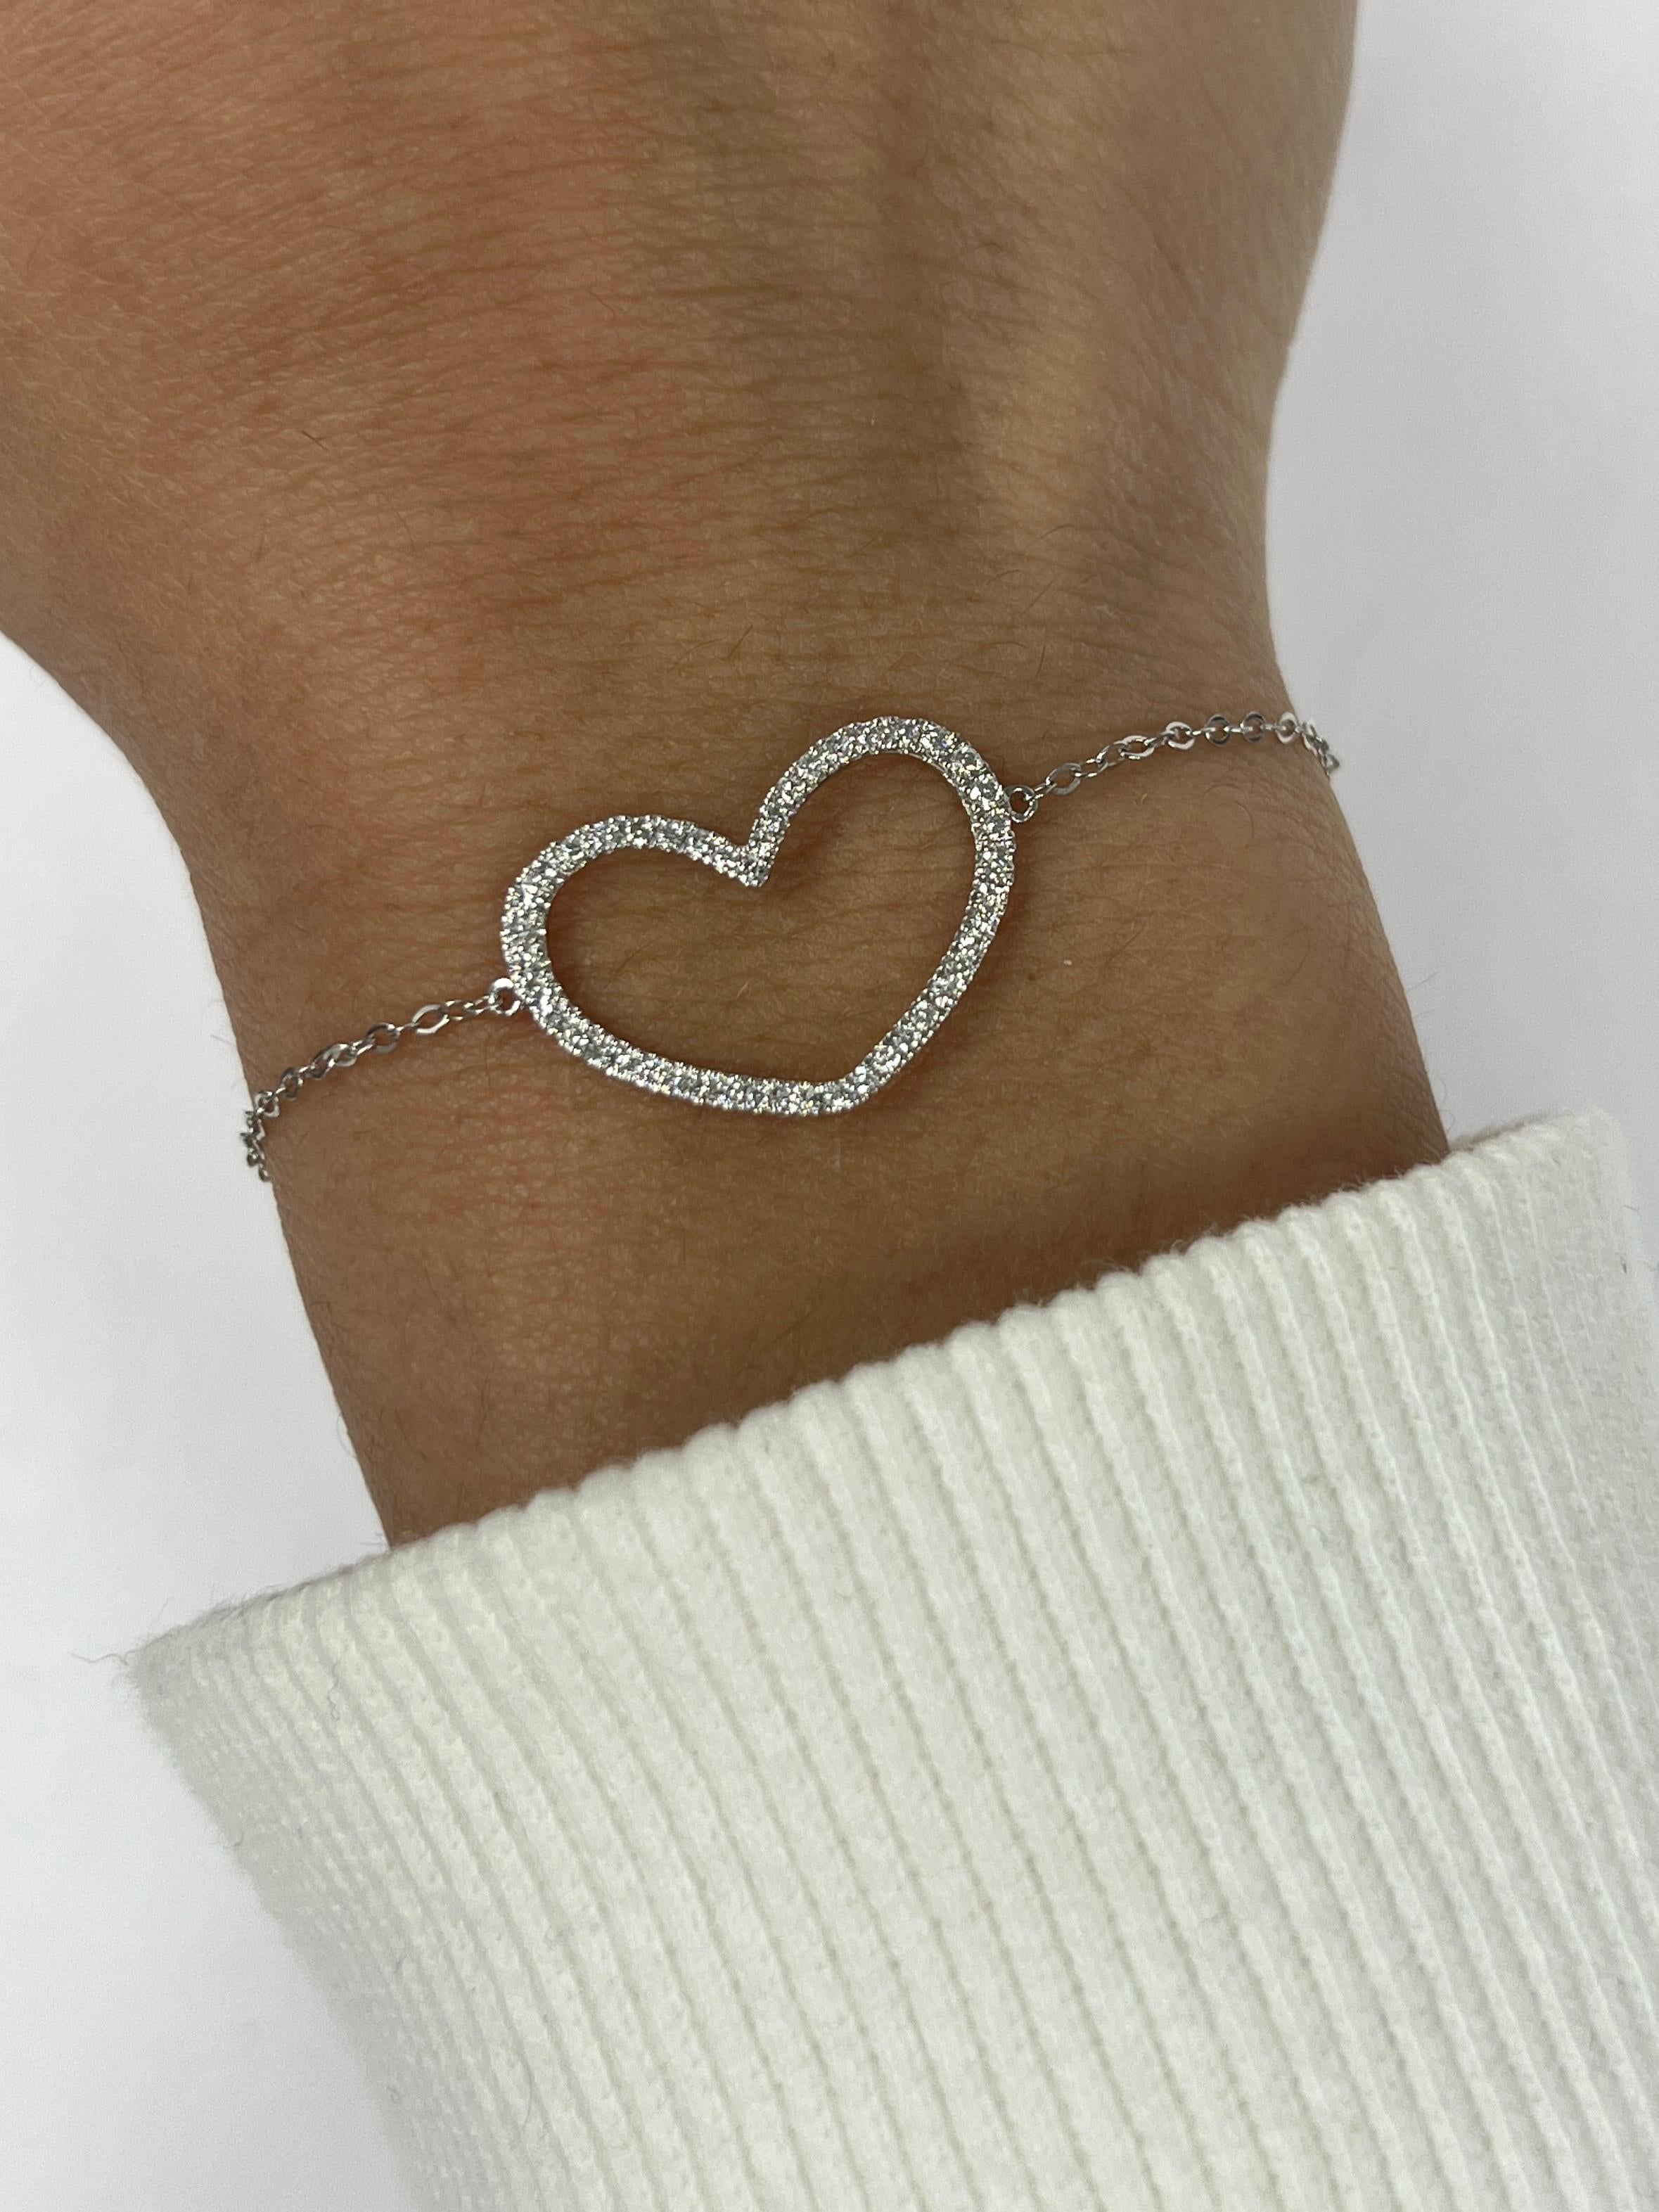 Modern White Gold Heart Shaped Bracelet For Sale